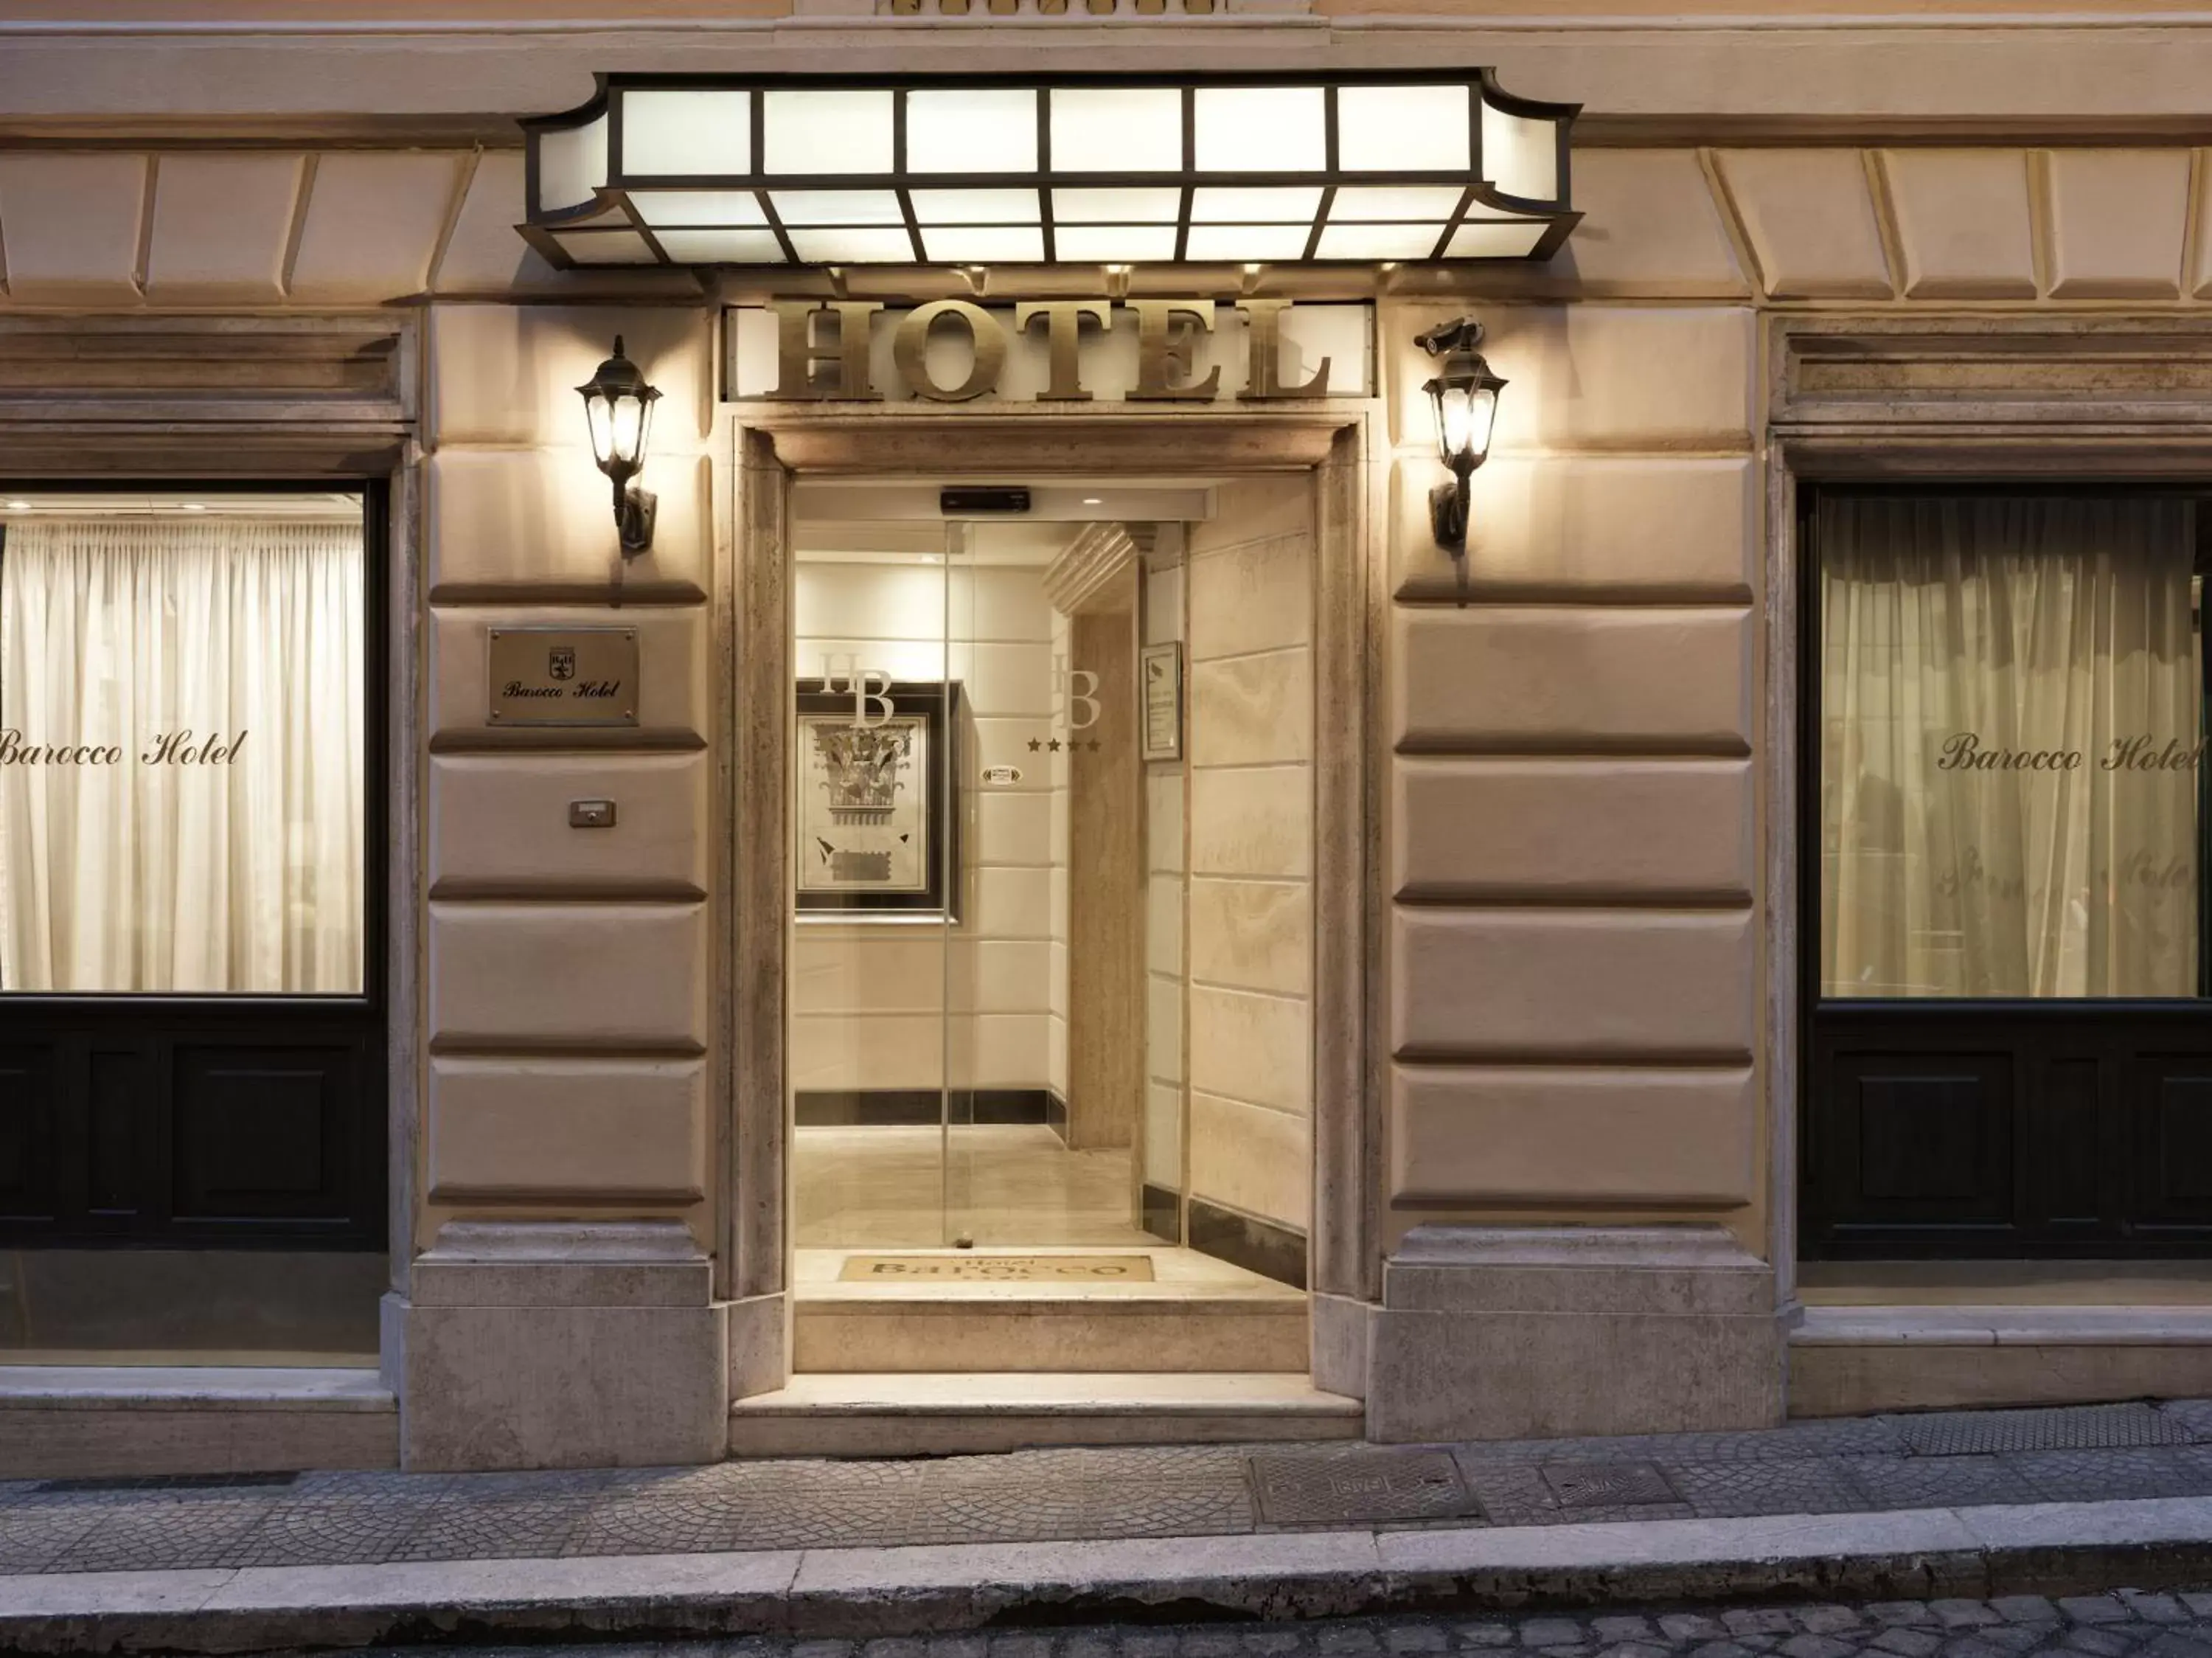 Property building, Facade/Entrance in Hotel Barocco